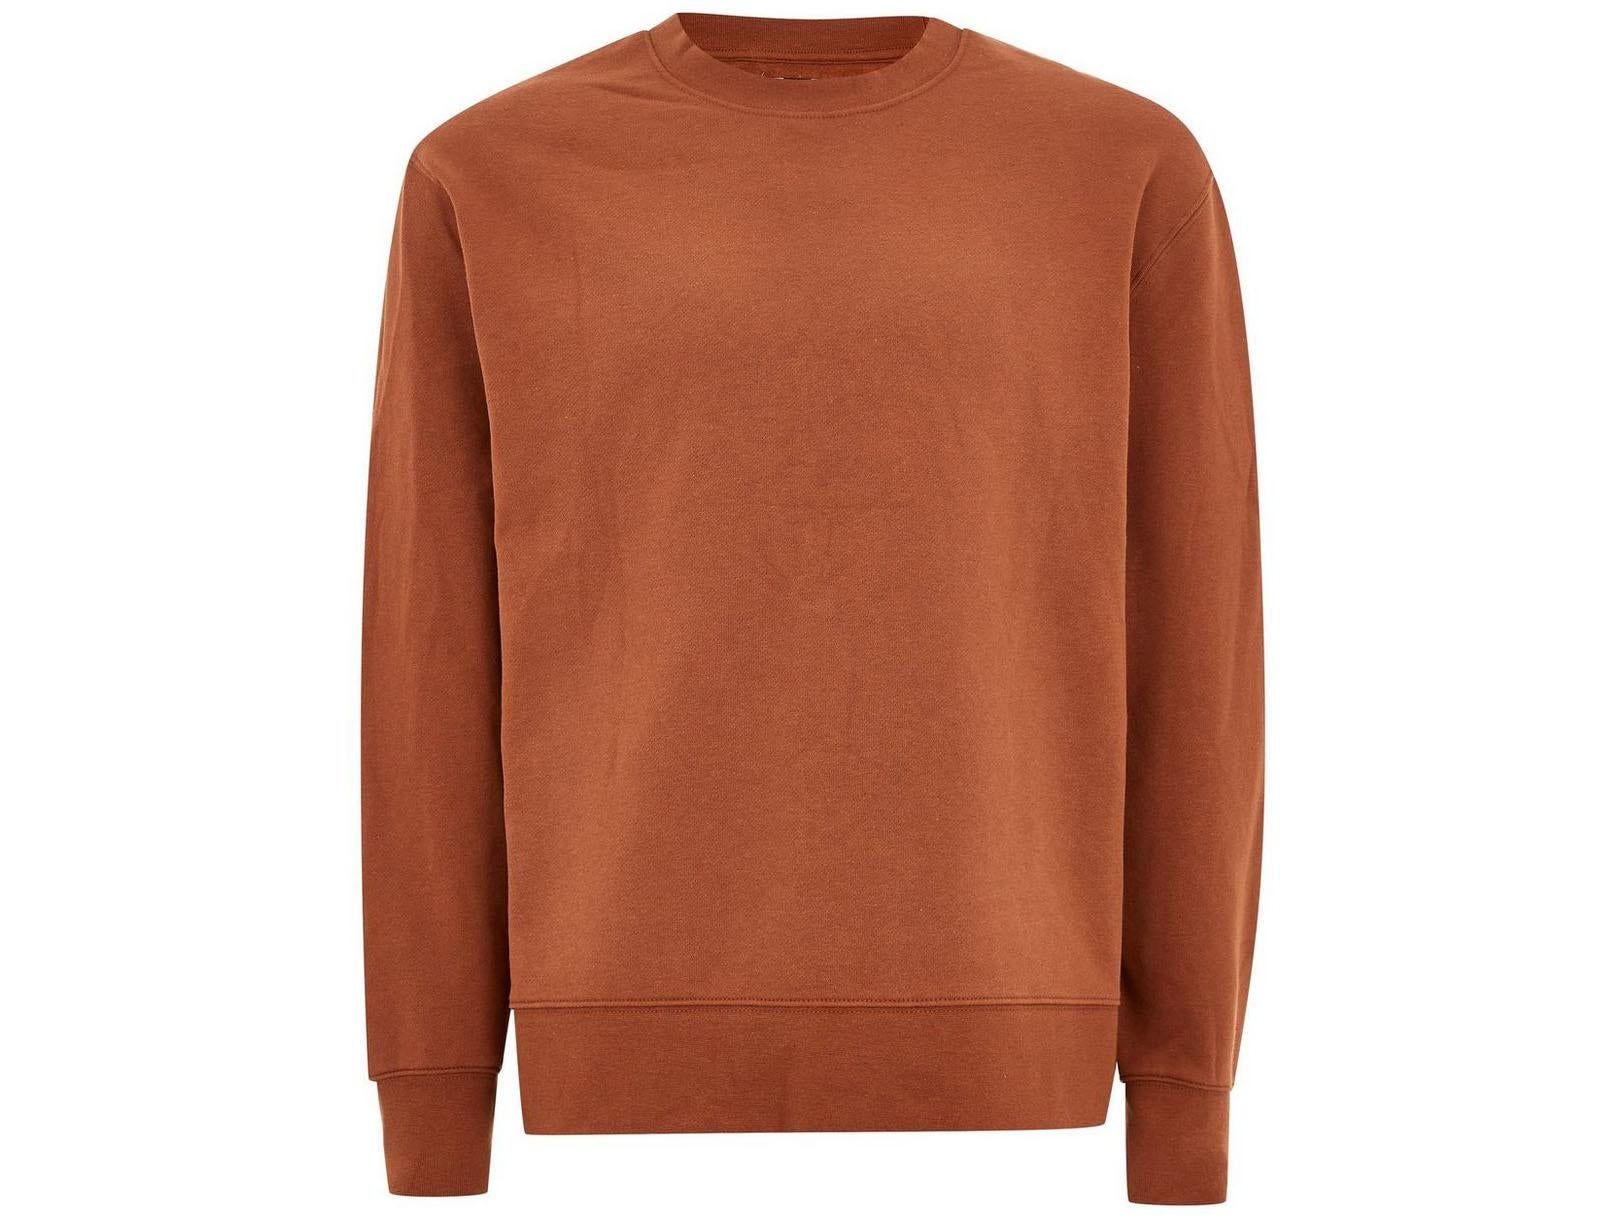 Rust Sweatshirt, £22, Topman